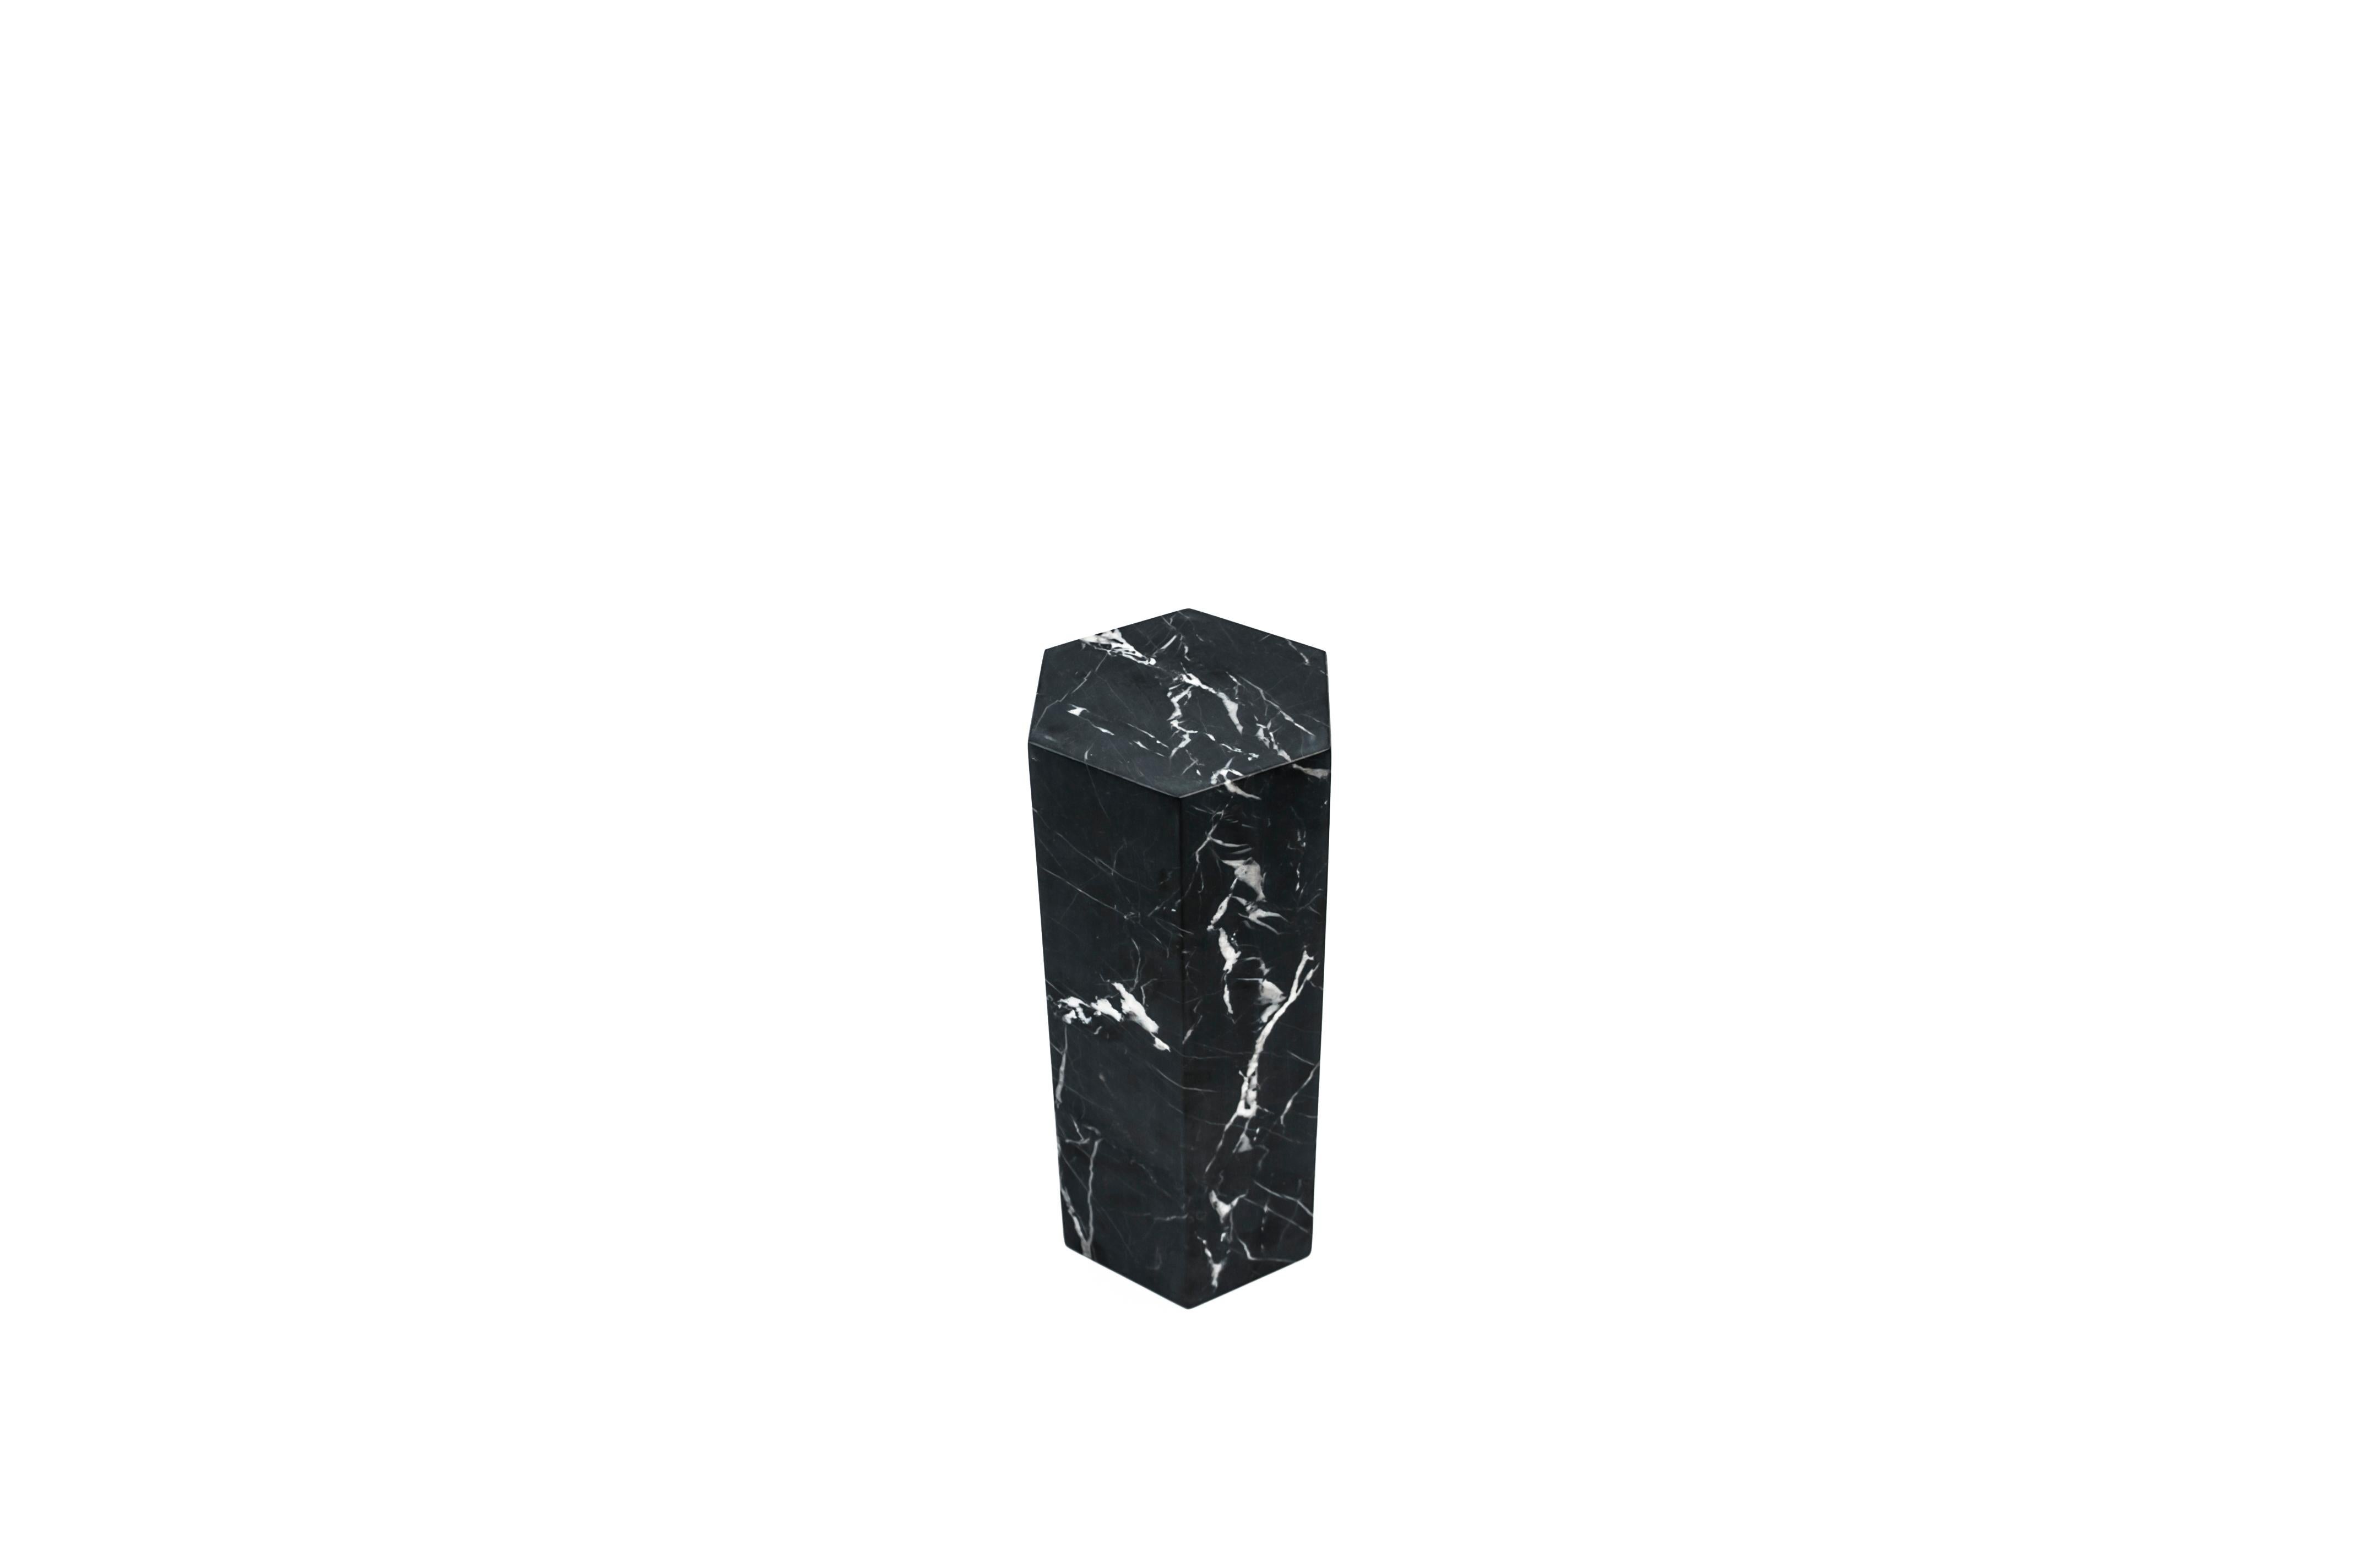 Ein großes dekoratives Prisma/Buchstütze aus schwarzem Marquina-Marmor voll. Geschliffene Oberfläche.
Jedes Stück ist ein Unikat (jeder Marmorblock hat eine andere Maserung und Schattierung) und wird von italienischen Handwerkern, die seit